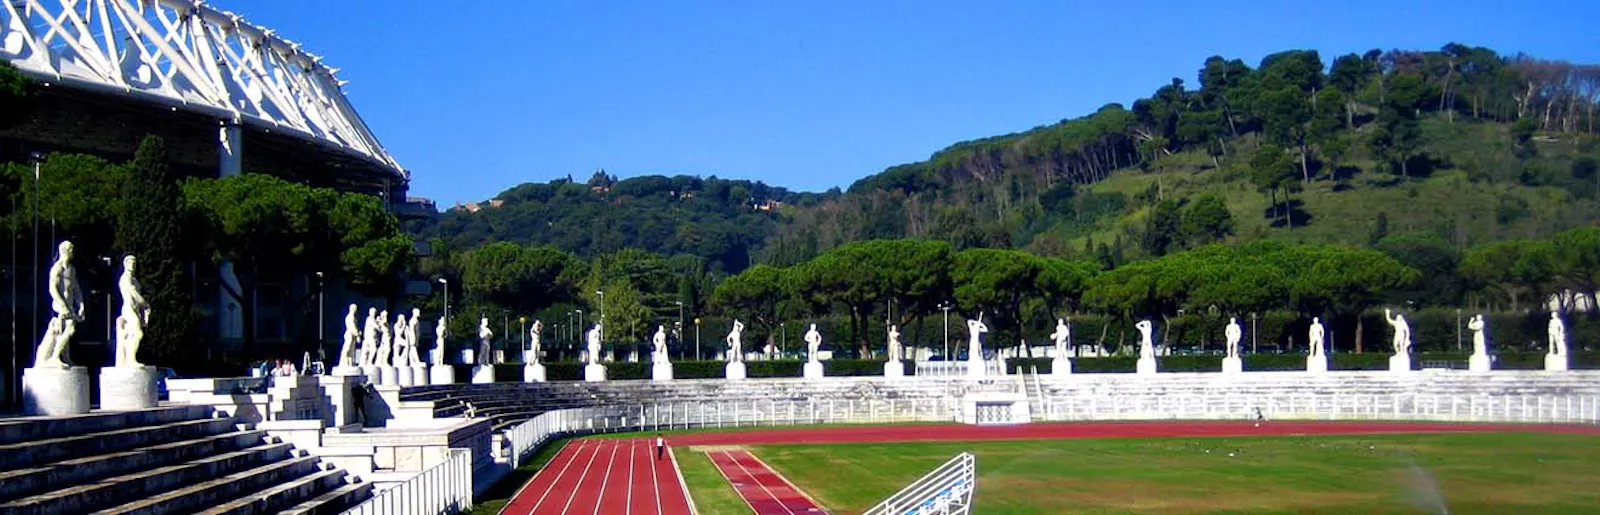 Blick ins Stadio dei Marmi mit antik wirkenden weißen Statuen, die das Stadion umranden